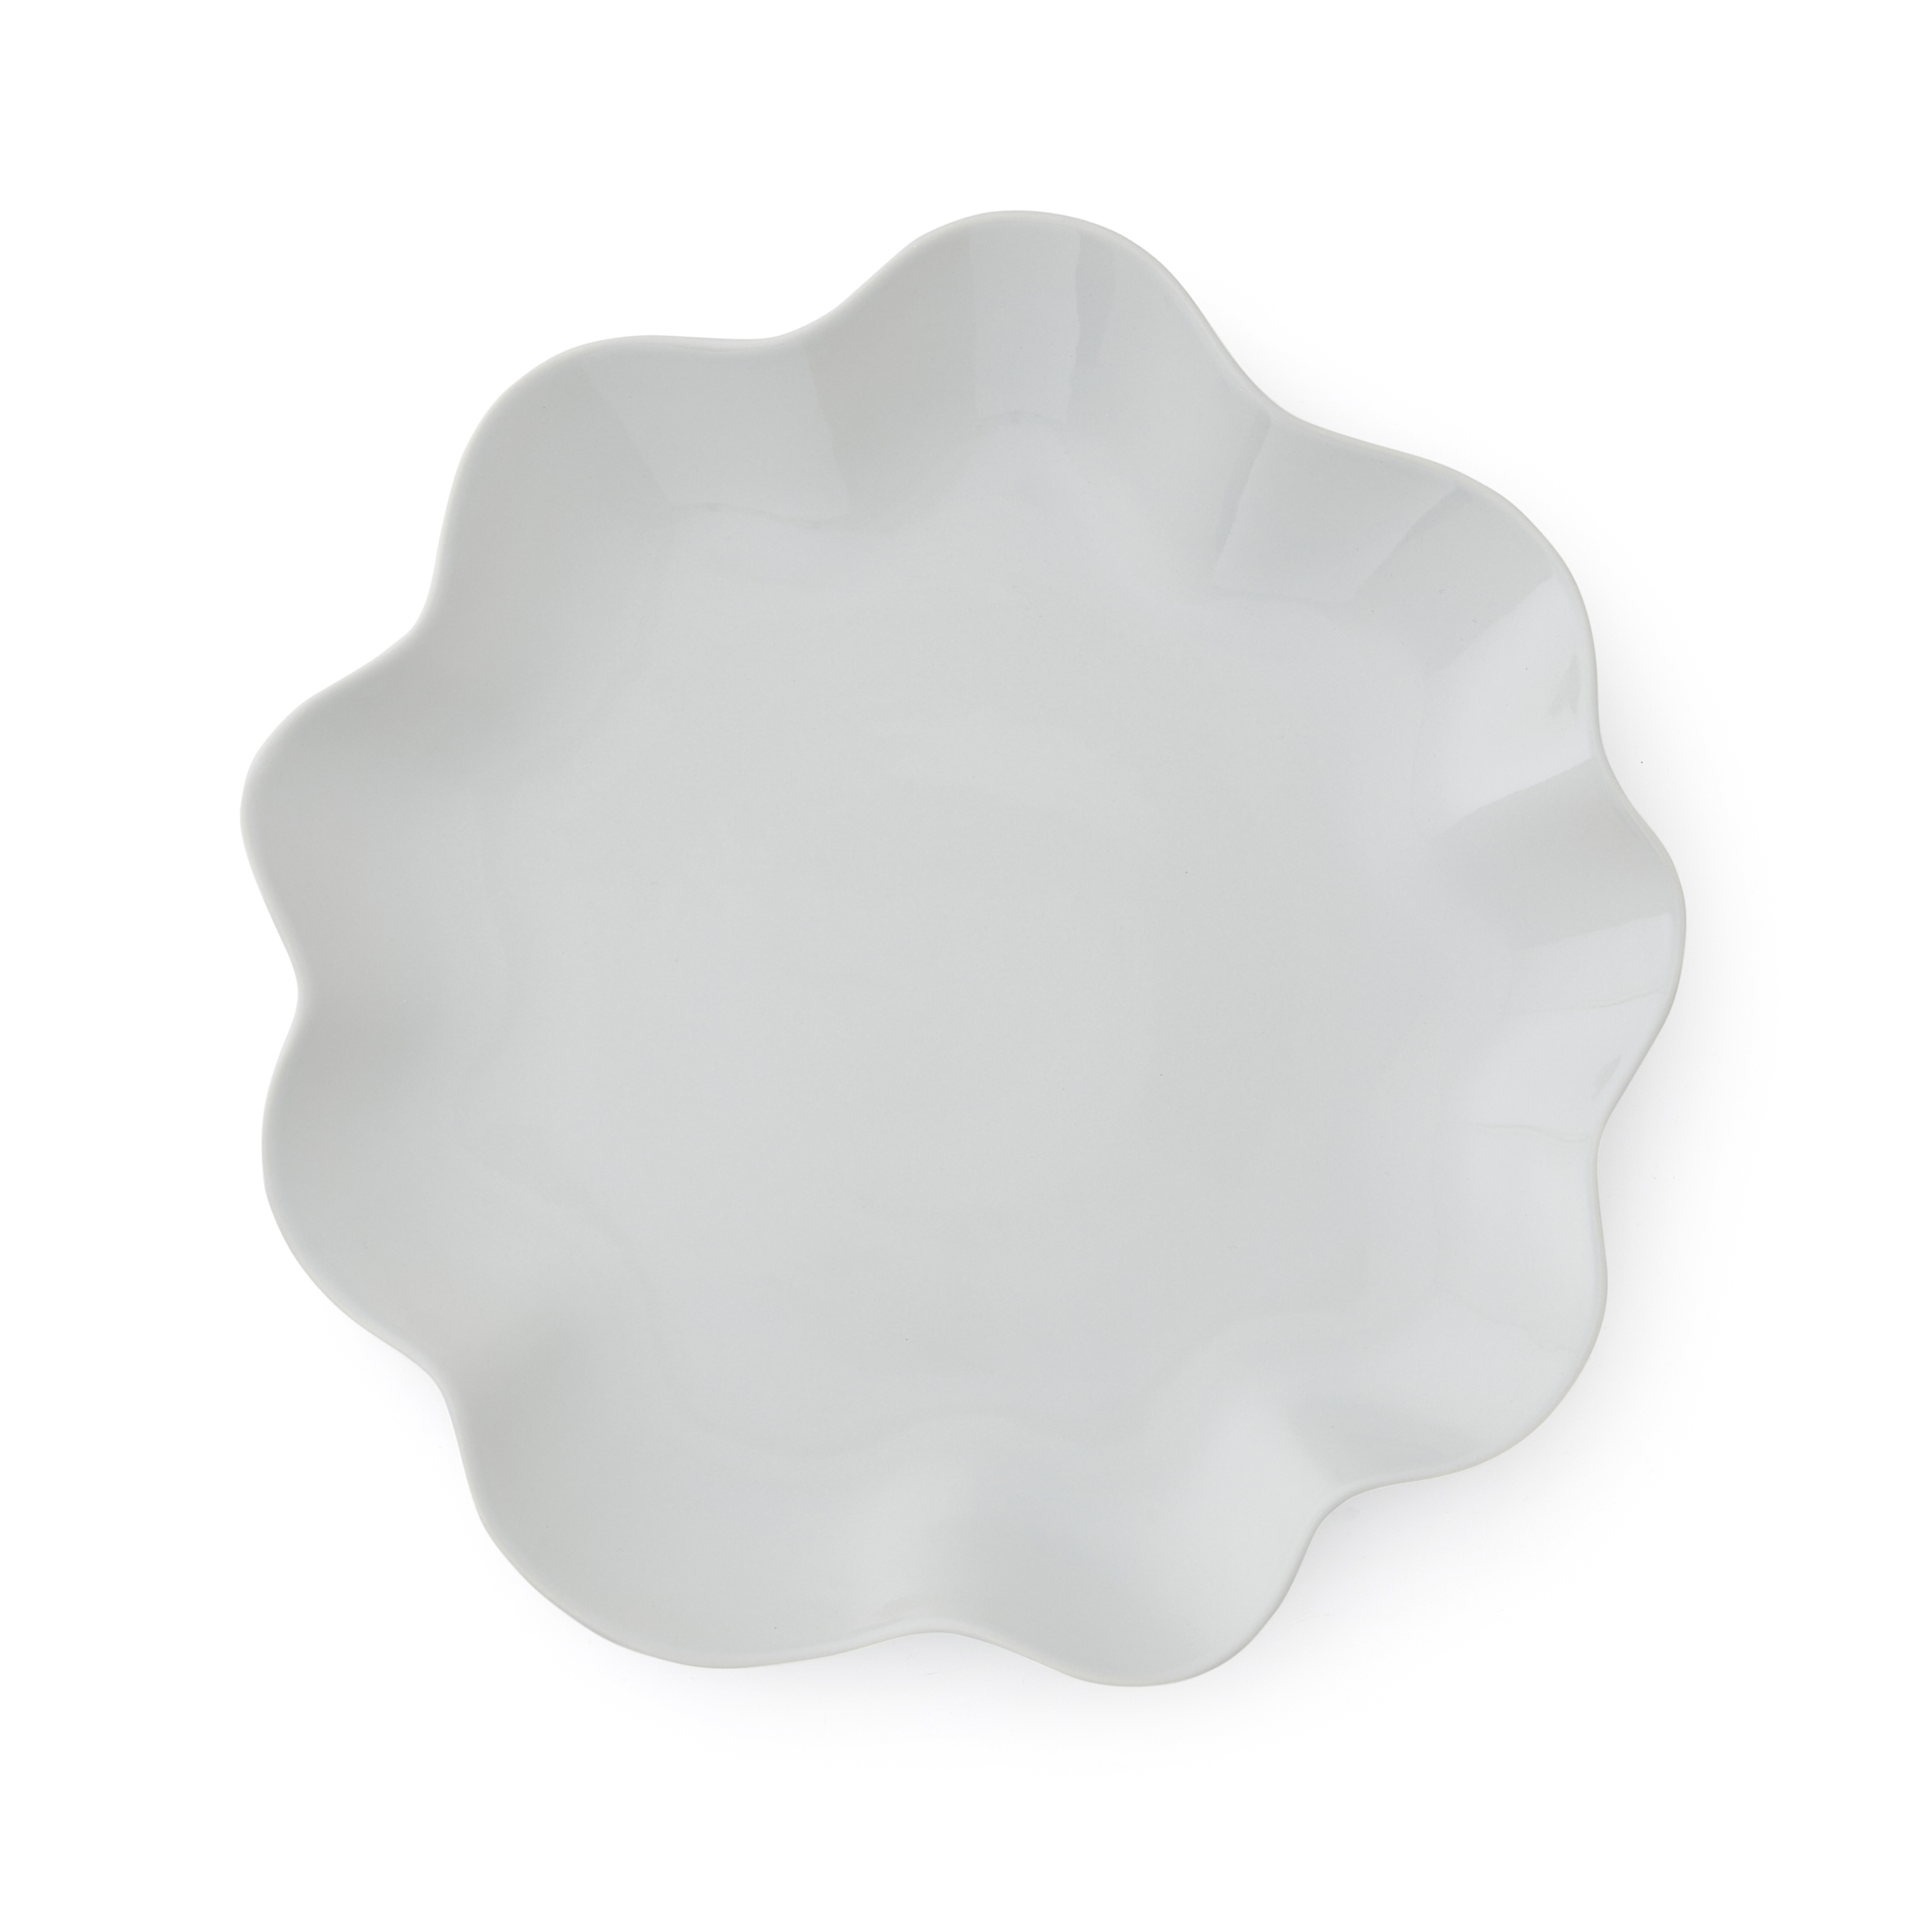 Sophie Conran Floret Large Serving Platter, Dove Grey image number null